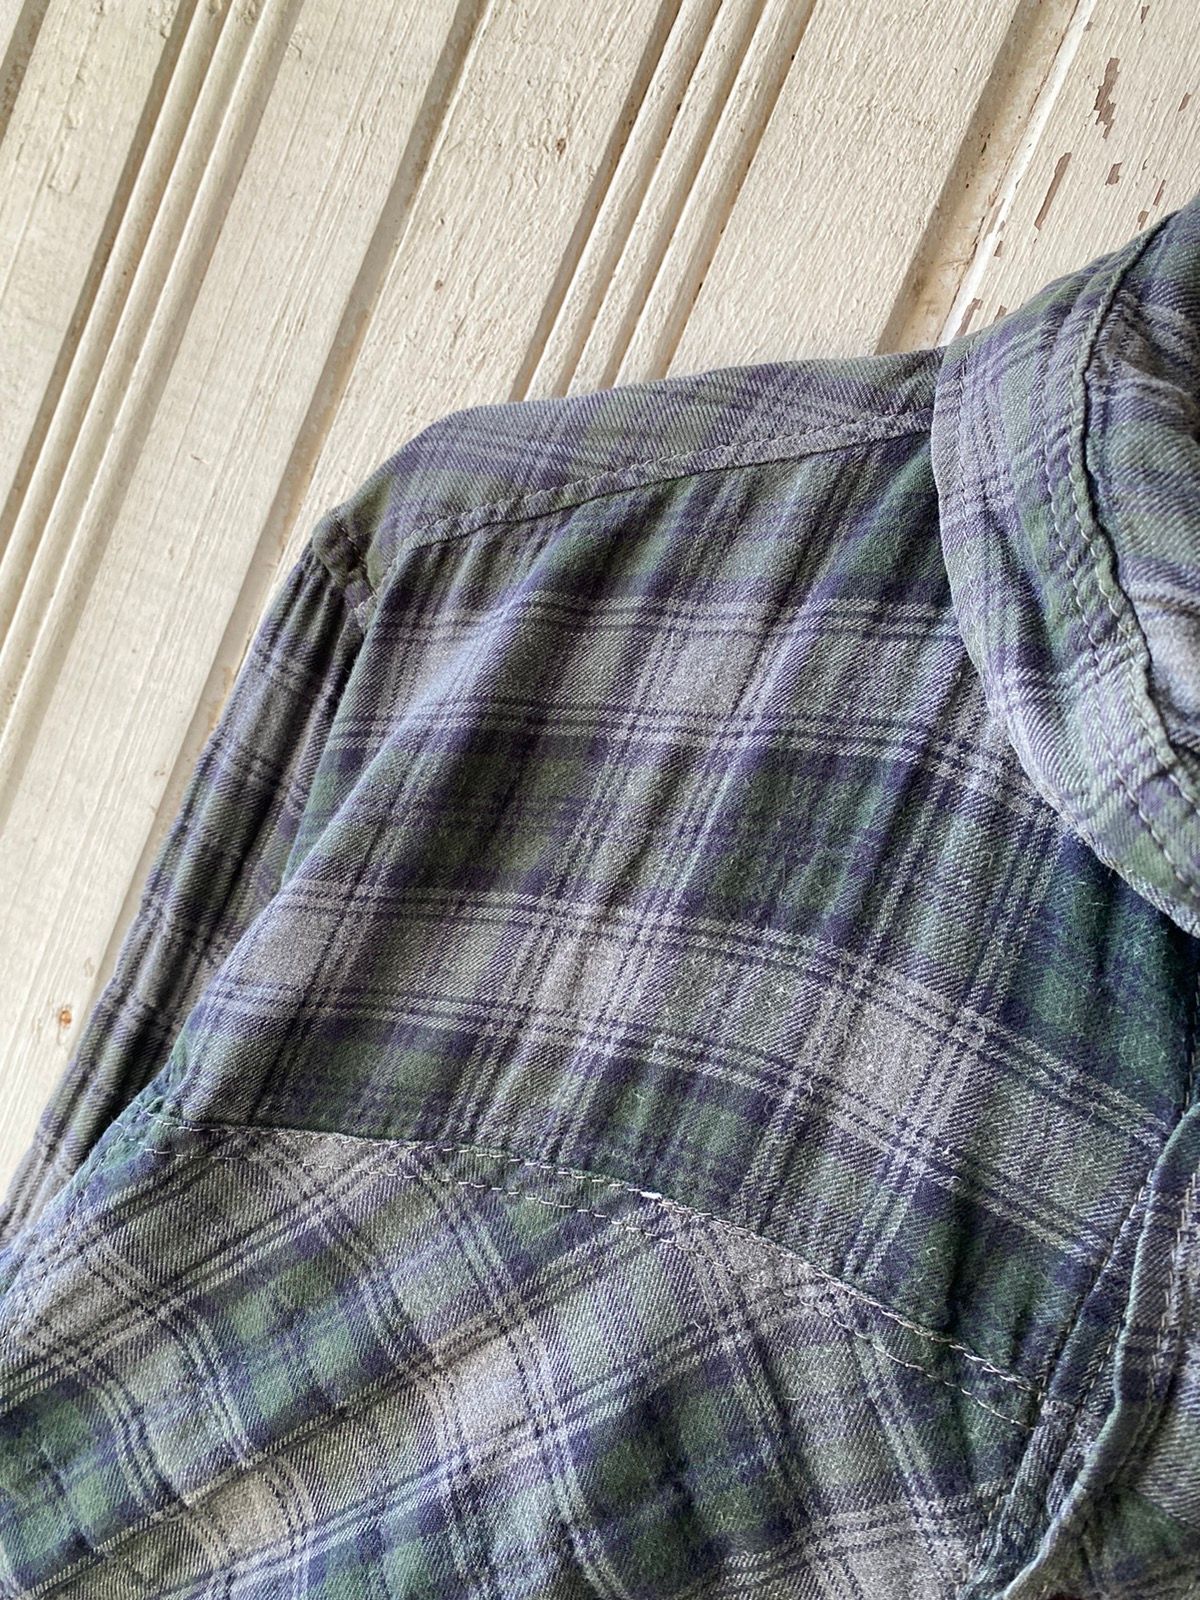 Vintage Vintage Final Home Flannel Shirt Button Ups Size US S / EU 44-46 / 1 - 5 Thumbnail